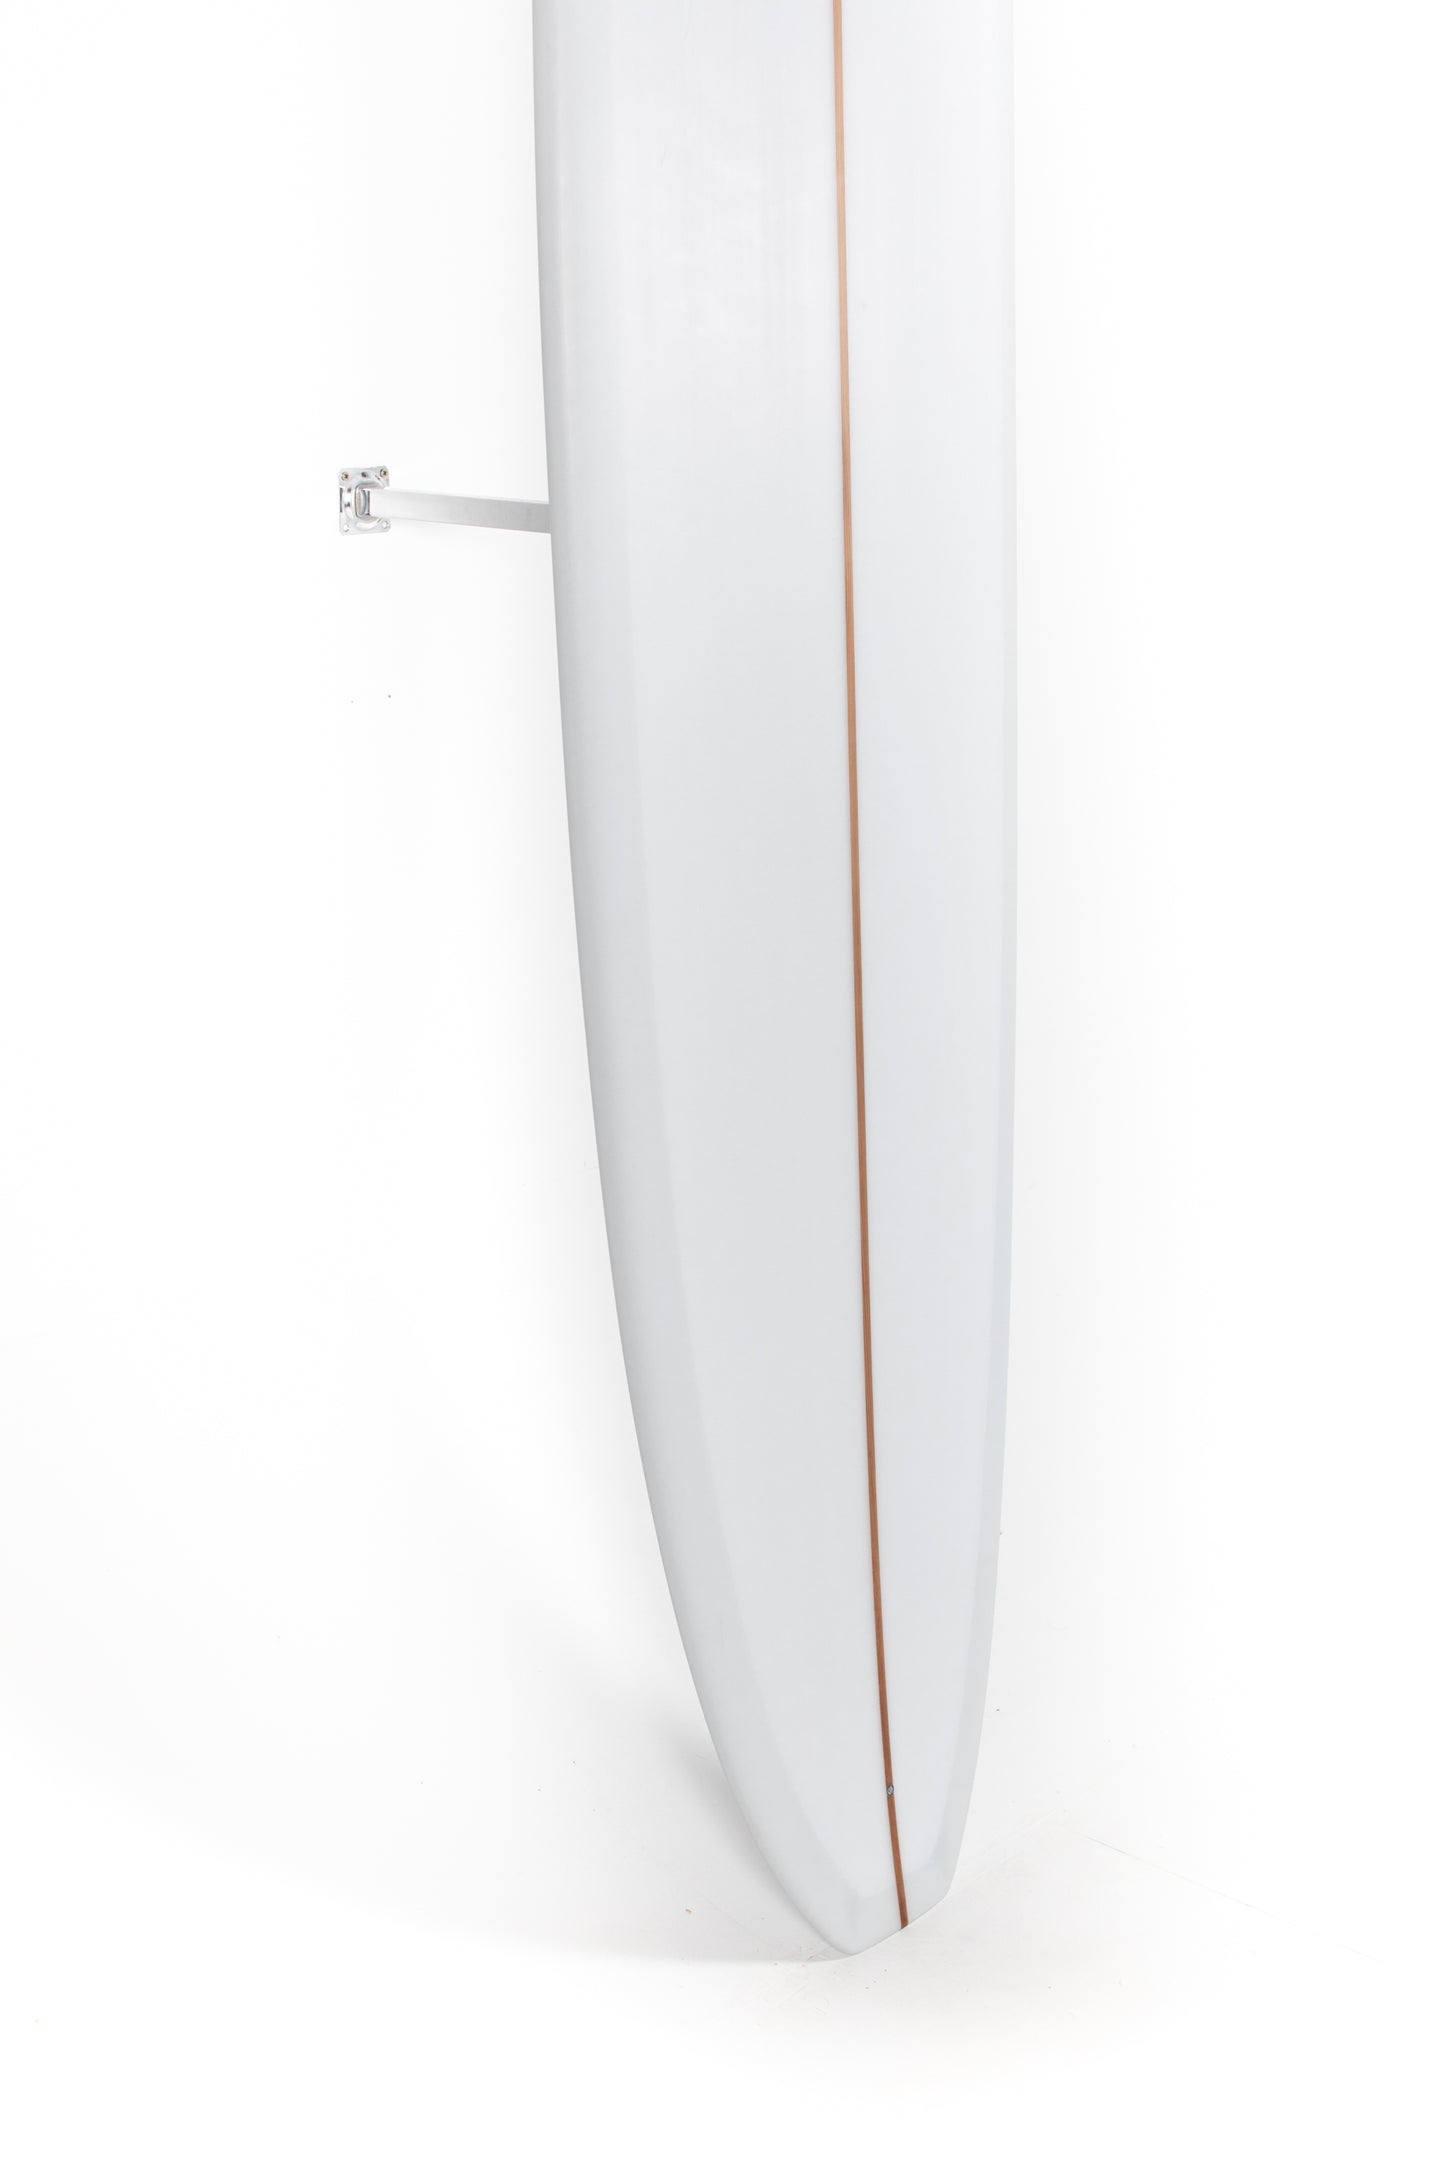 
                  
                    Pukas Surf Shop - Adrokultura Surfboards - BOB'S - 9'4" x 22 7/8 x 3 - BOBS94
                  
                